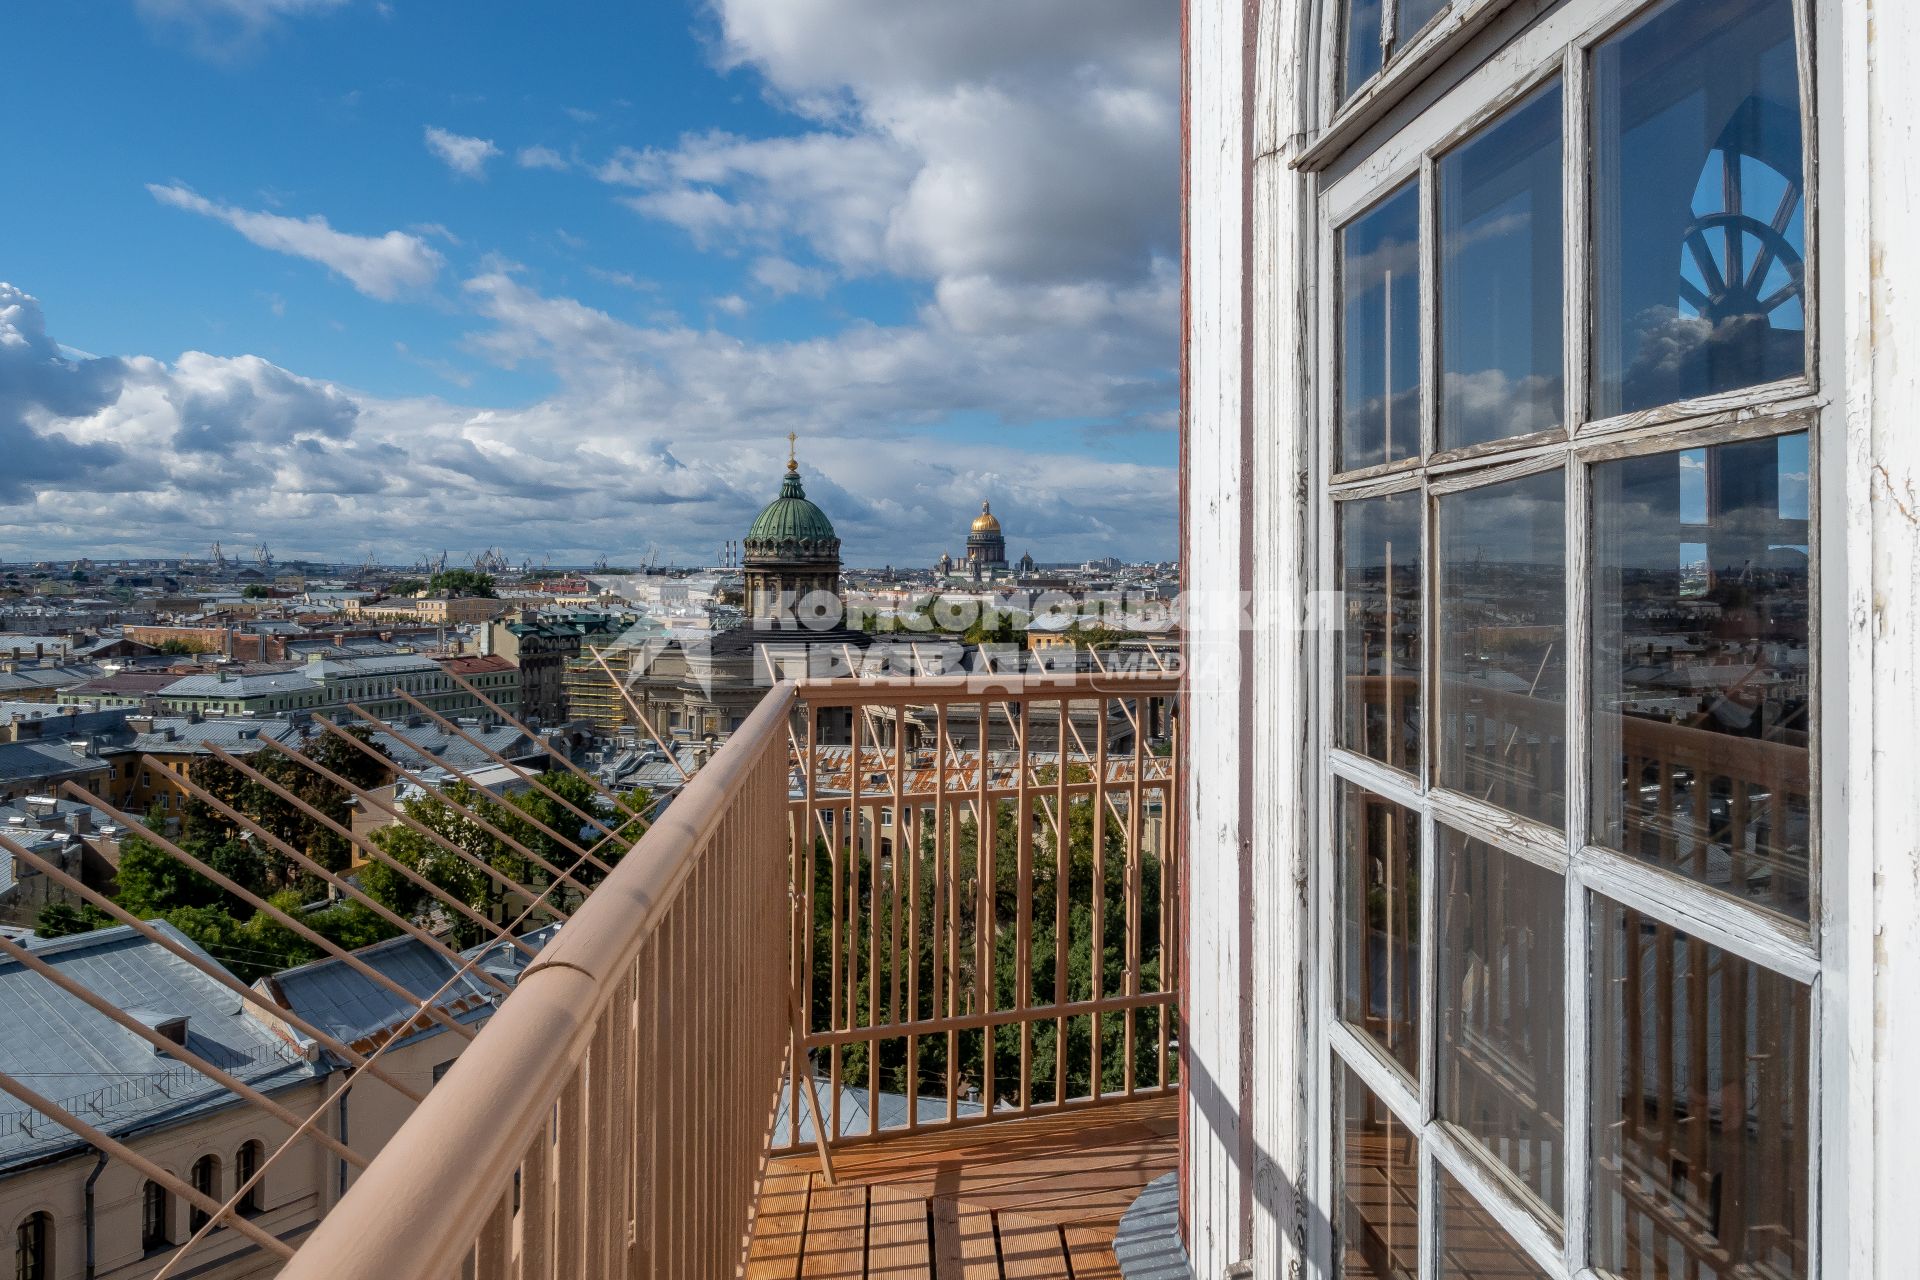 Санкт-Петербург. Вид с балкона на Казанский и Исаакиевские соборы.